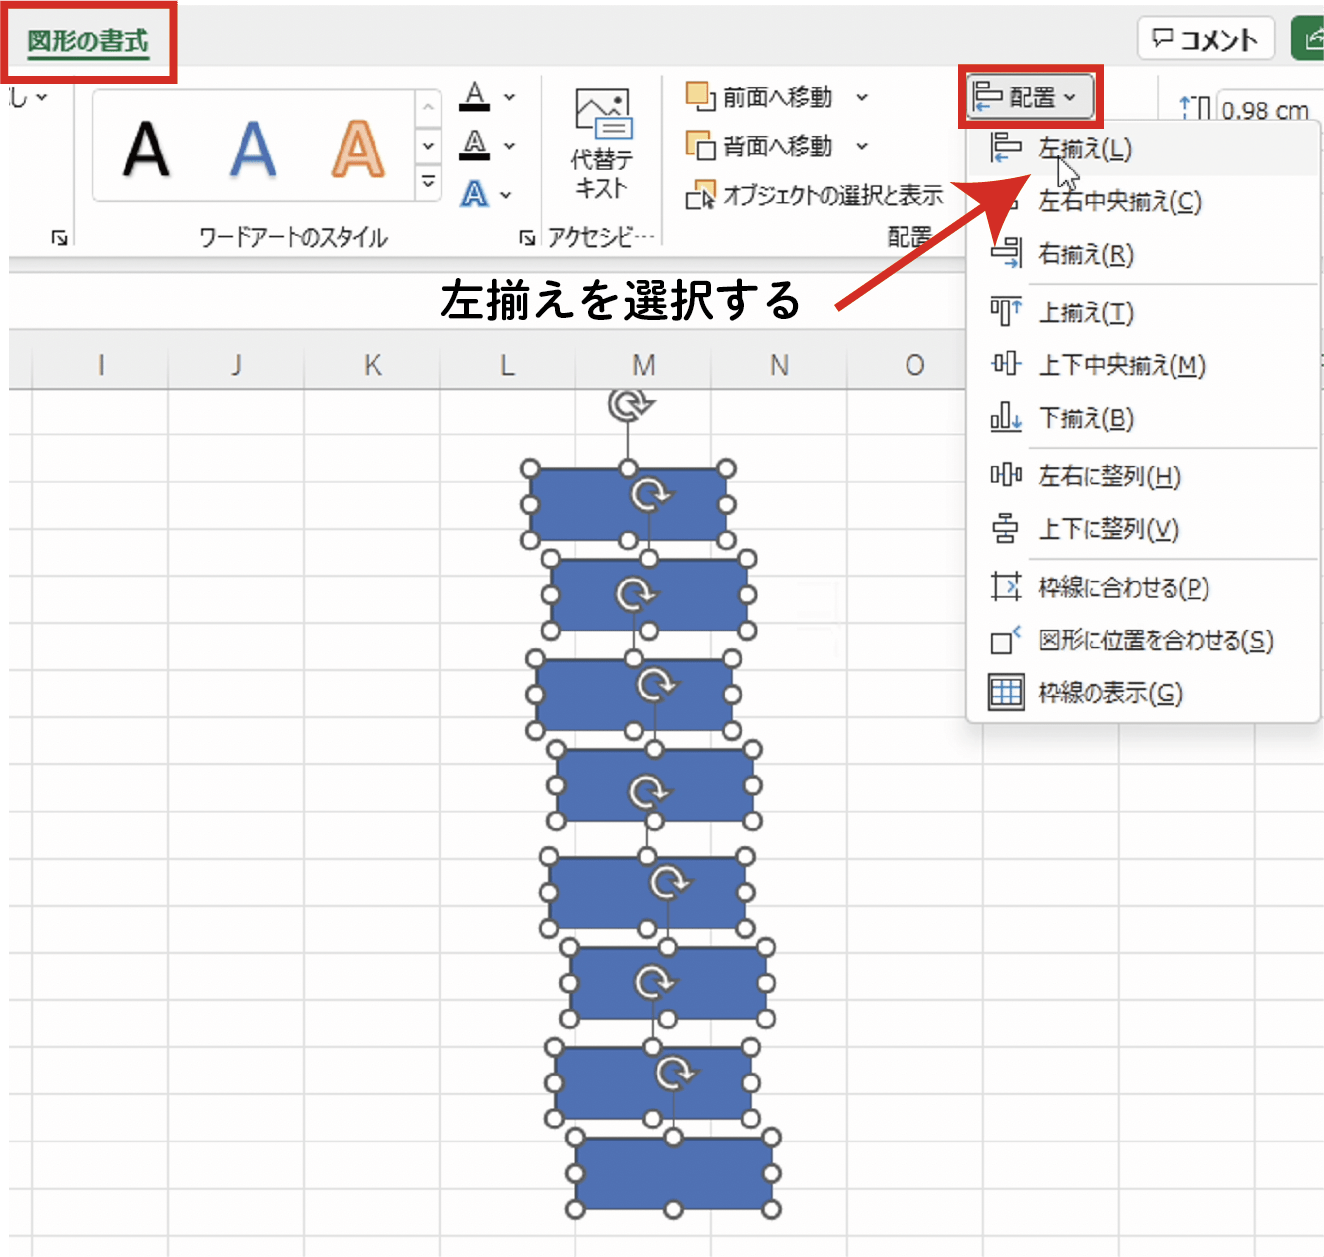 【Excel】バラバラの図形を一気に整列